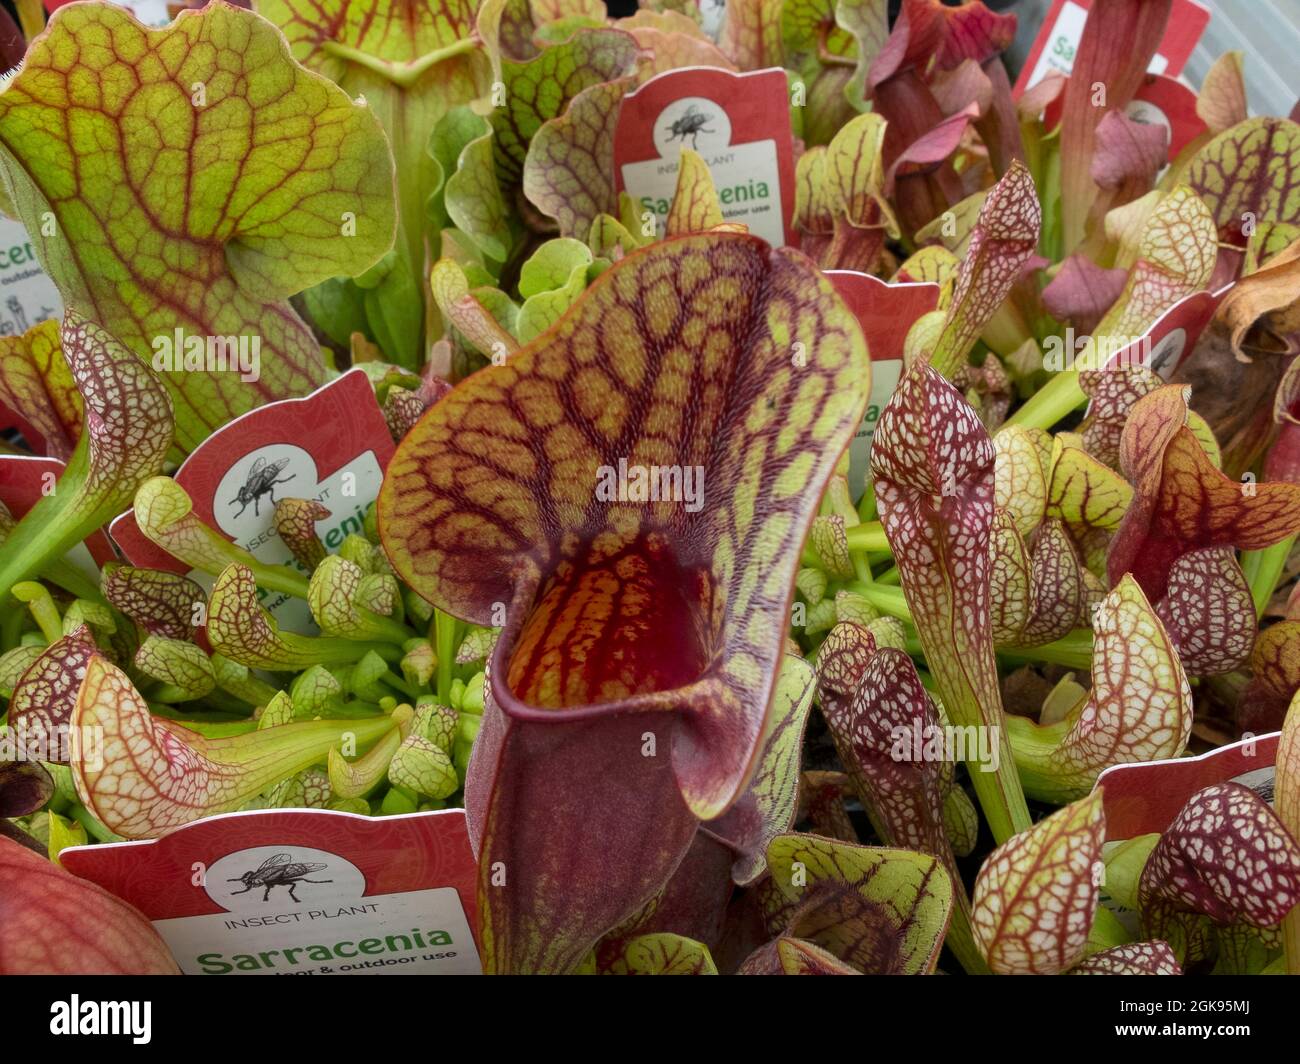 Impianto di caraffa (Sarracenia spec), impianti carnivori da vendere, Germania Foto Stock